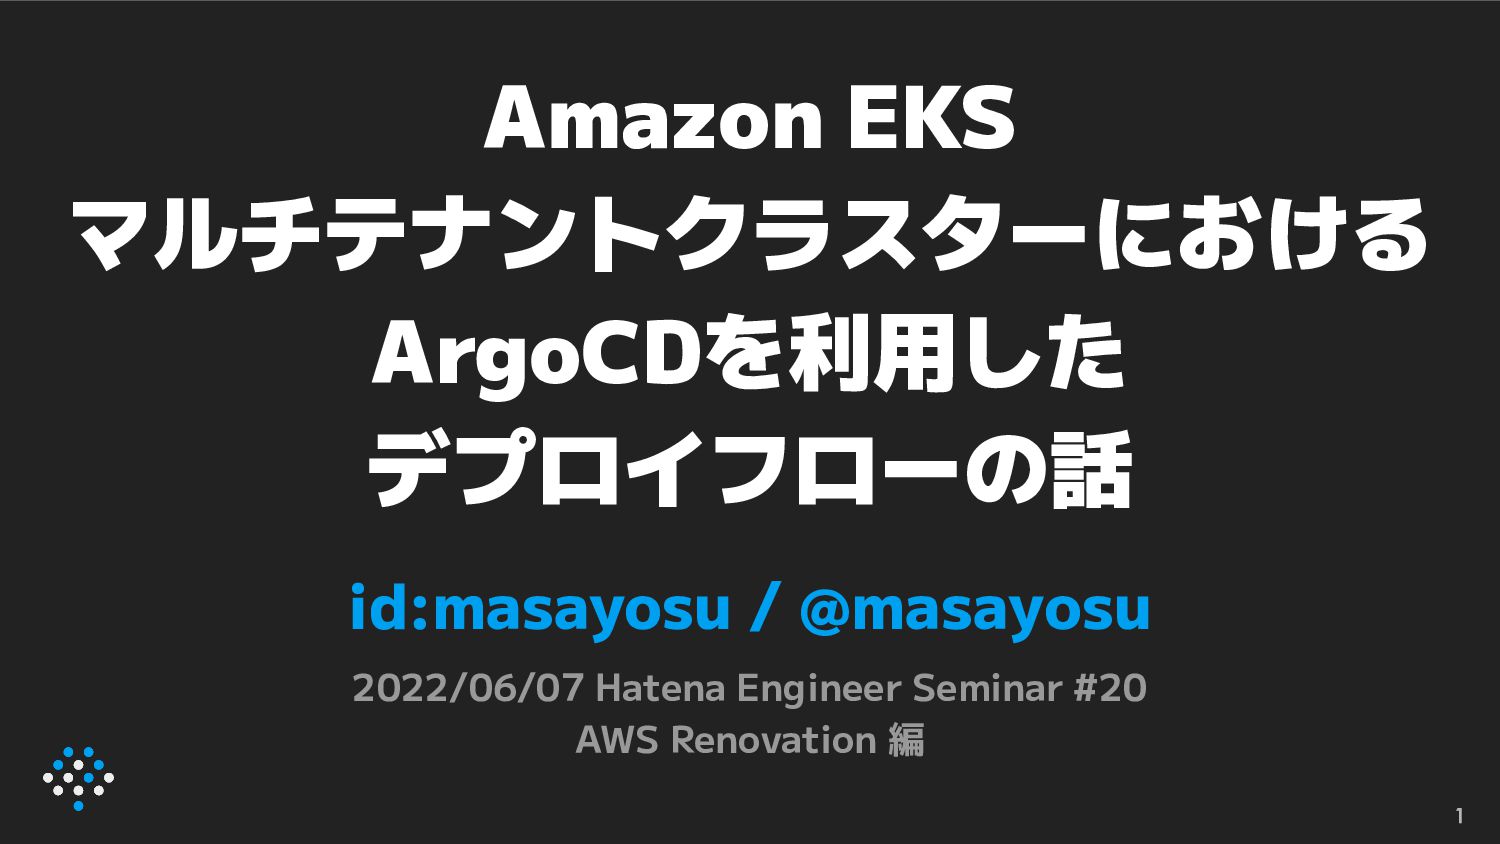 Amazon EKS マルチテナントクラスターにおけるArgoCDを利用したデプロイフローの話